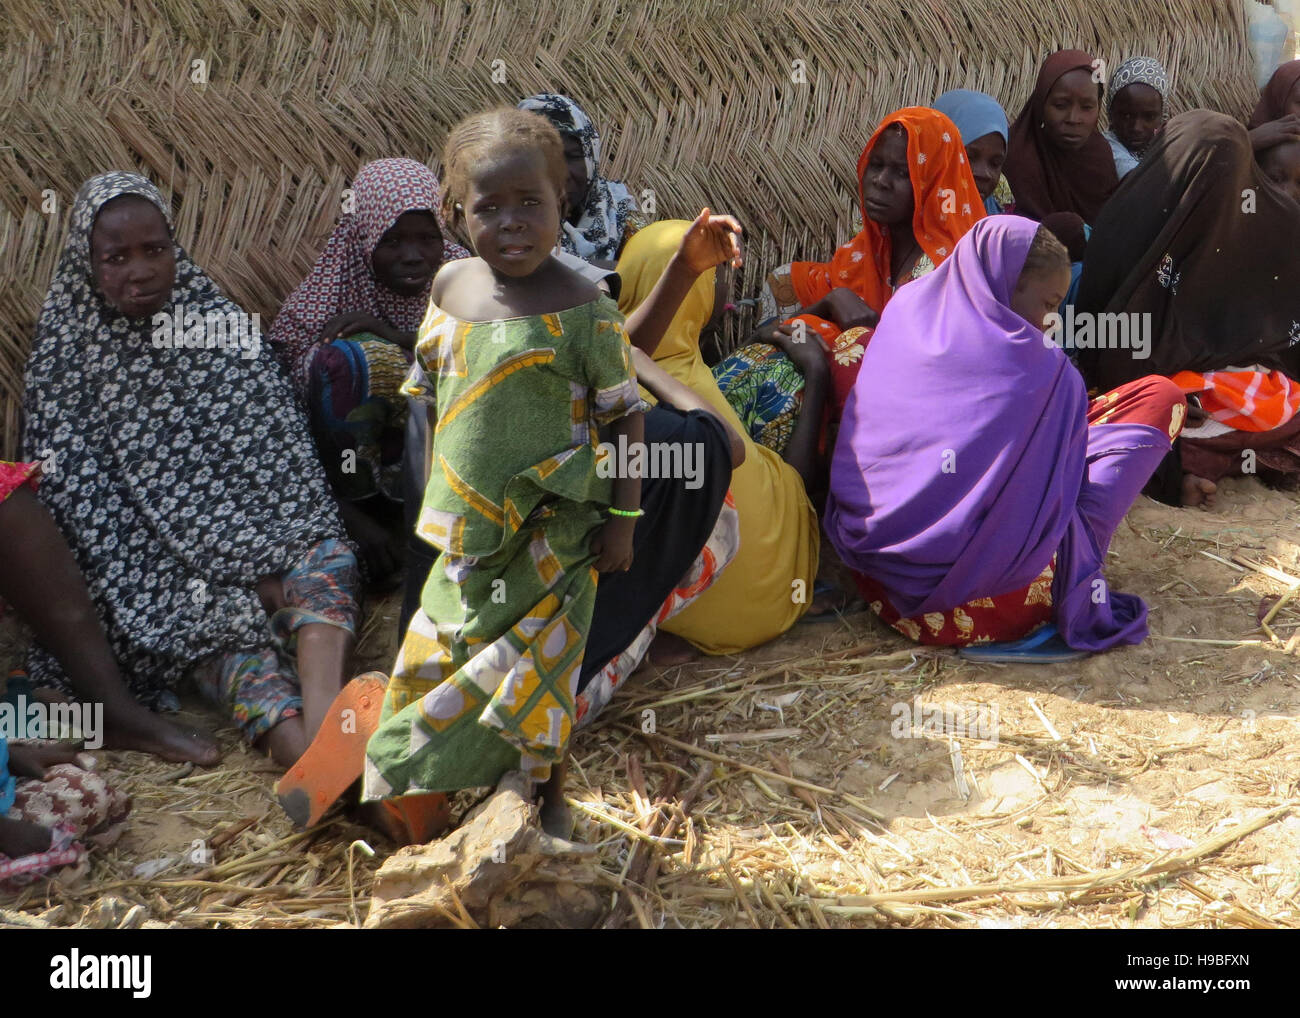 Maiduguri, Nigeria. 27 Oct, 2016. Frauen und Kinder sitzen Im Schatten der Zelte am 27.10.2016 im Flüchtlingslager für Bakassi durch die islamistische Terrorgruppe Vertriebene Boko Haram à Maiduguri dans Nord-Ost-Nigeria. (Zu dpa "Gerettet, aber nicht gewollt : Das le destin d'der Opfer-Boko-Haram" vom 21.11.2016) Sam Olukoya/dpa Foto : Sam Olukoya/dpa/Alamy Live News Banque D'Images